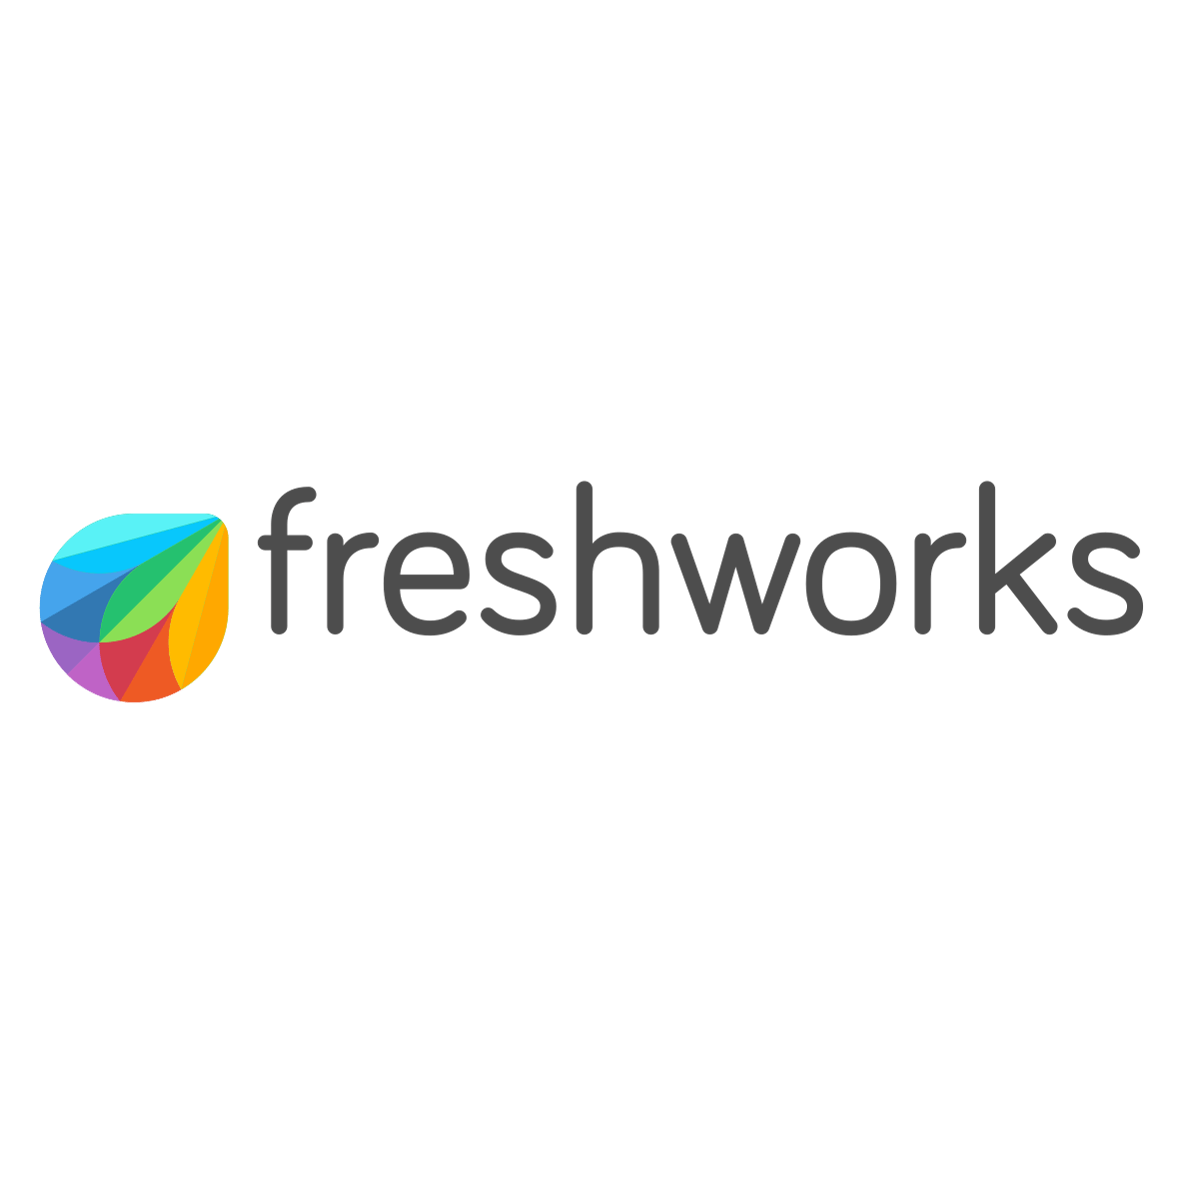 Freshworks-vector-logo.svg